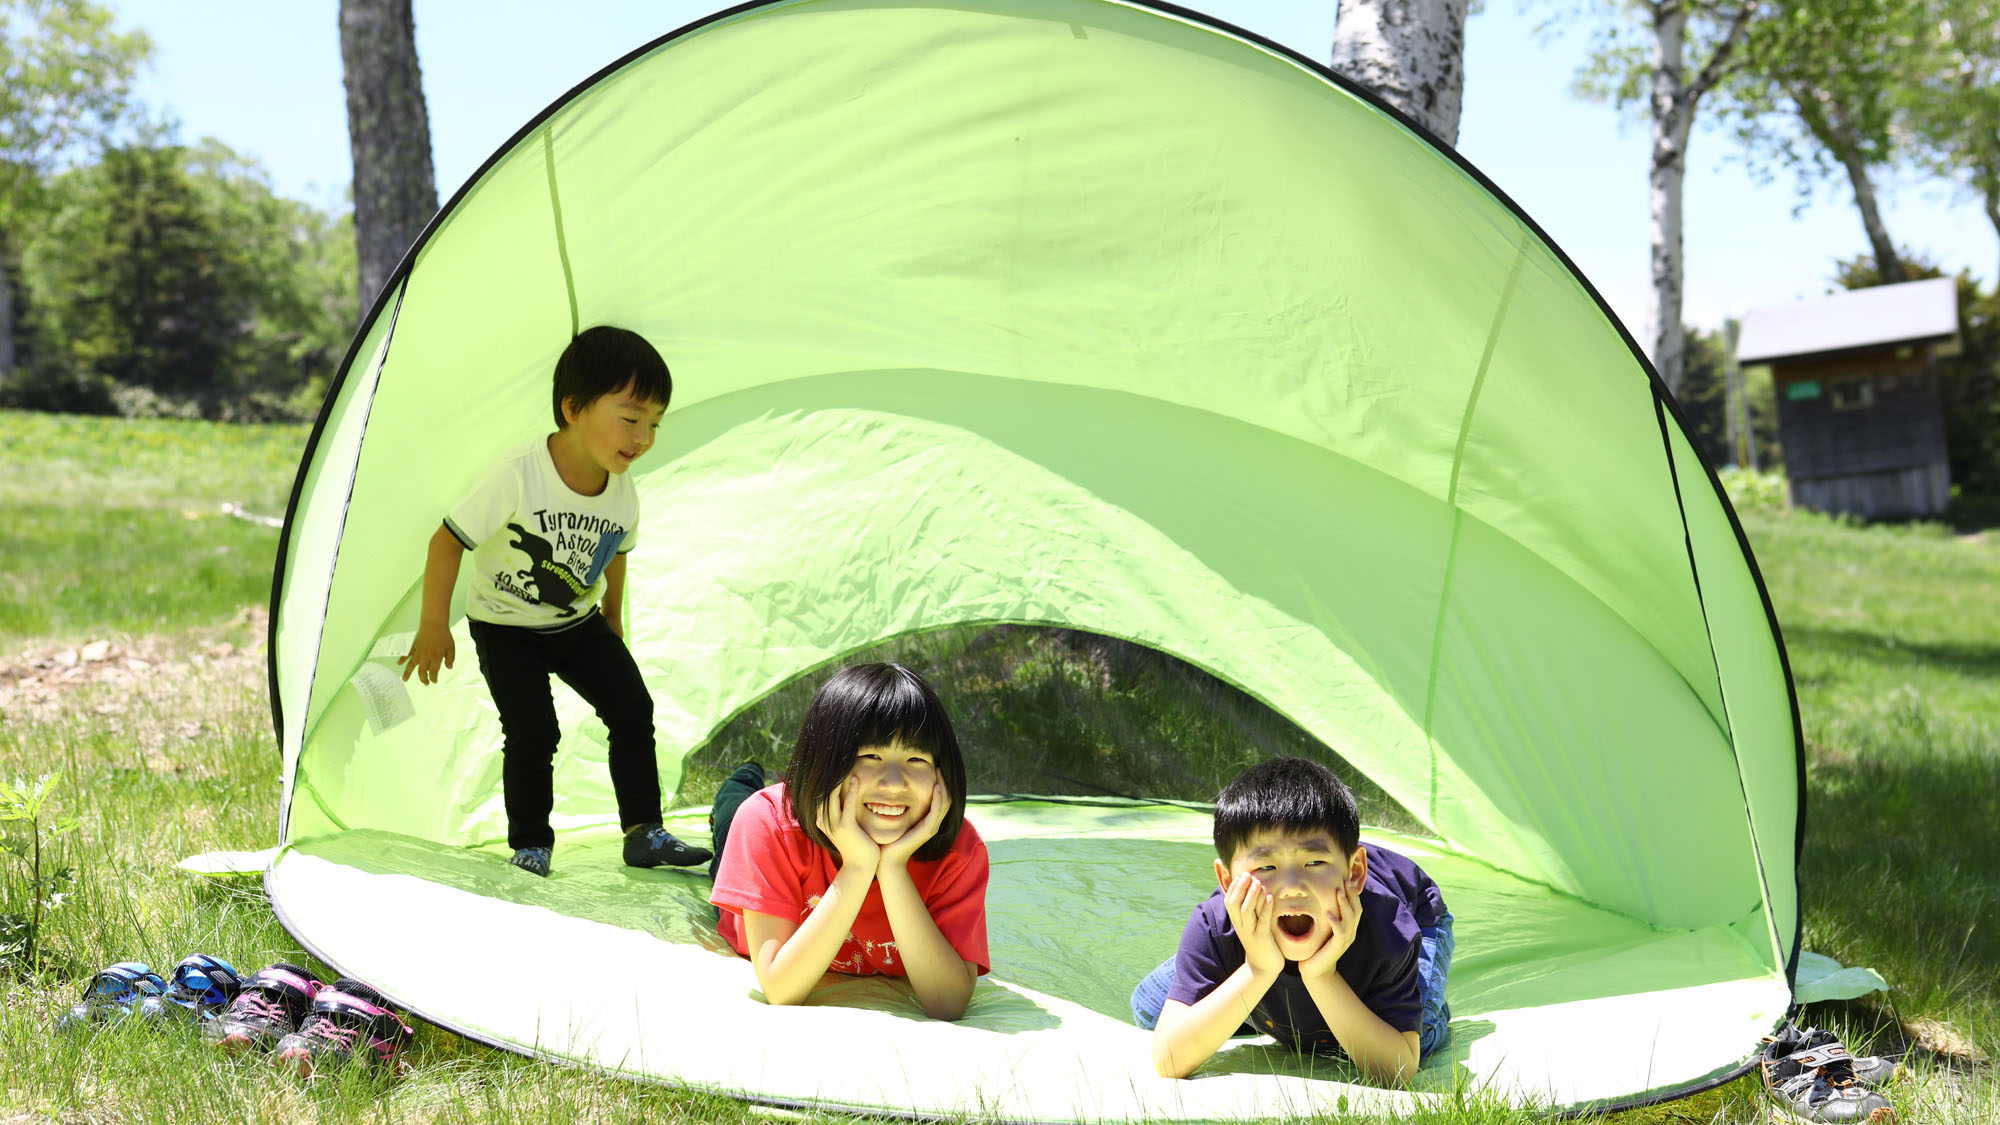 【夏】テントも貸し出しています。ゴロンと出来る大きなテントです。